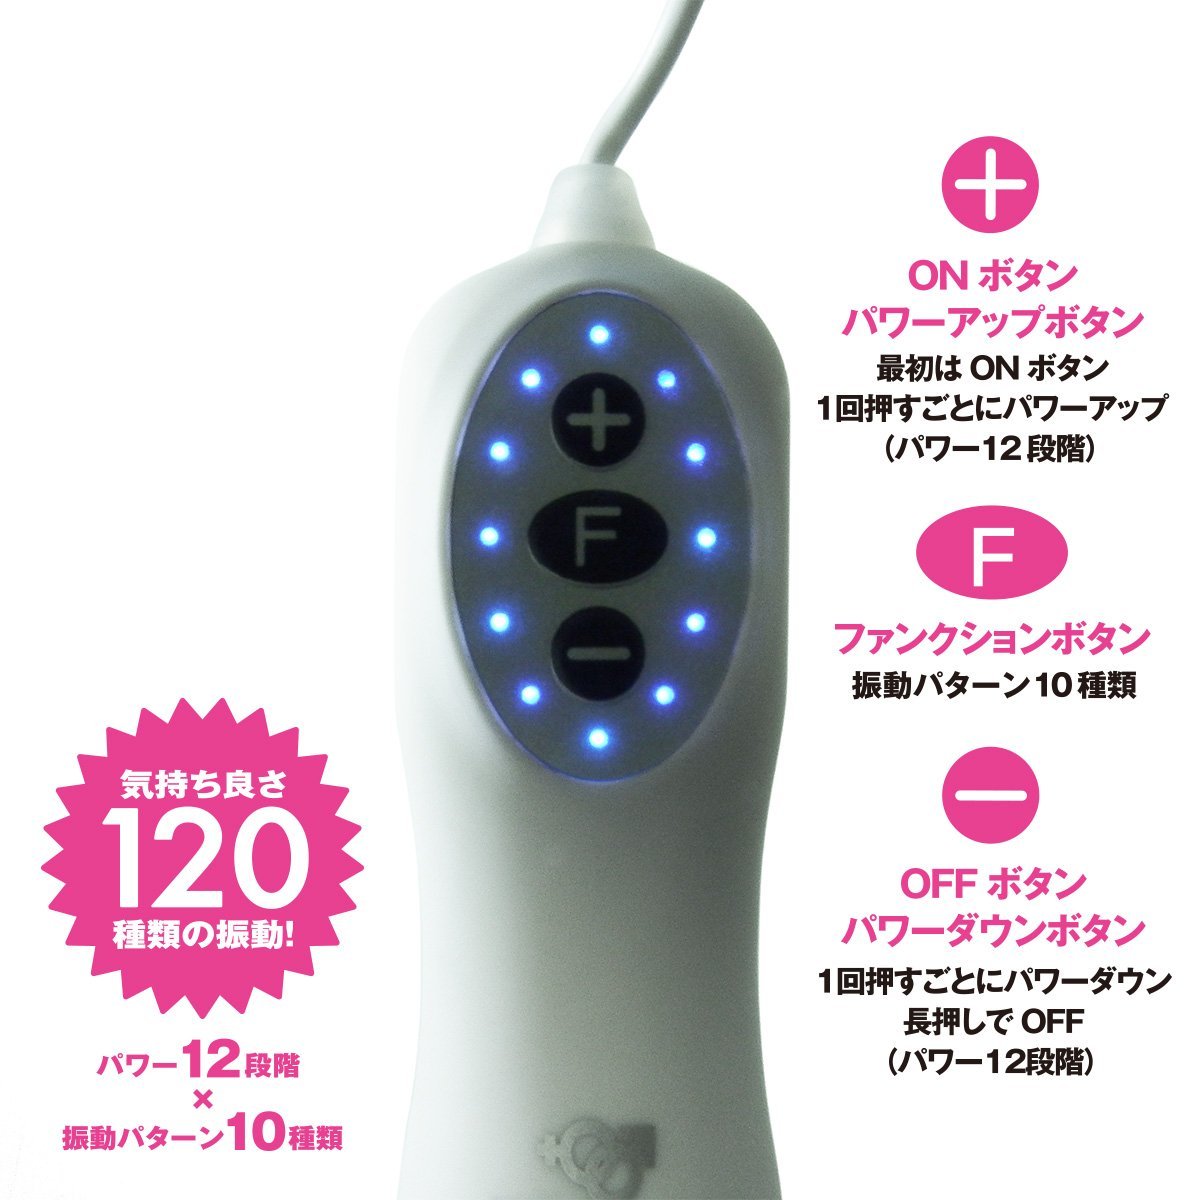 SSI JAPAN 【乳】CLI 陰蒂持續刺激刷子按摩器 陰蒂震動器 購買